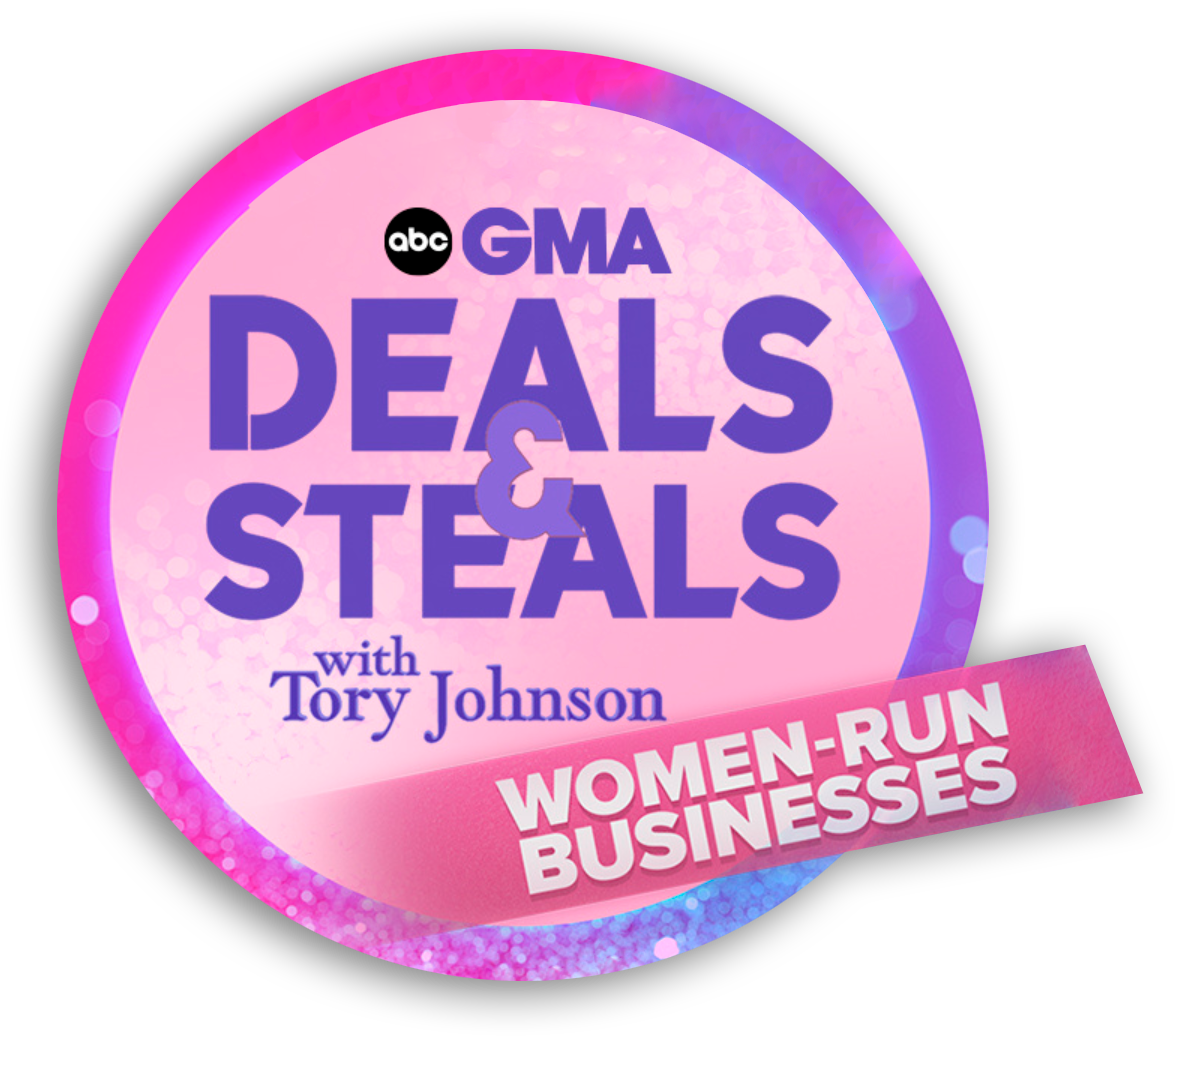 GMA Deals & Steals. Women-run businesses